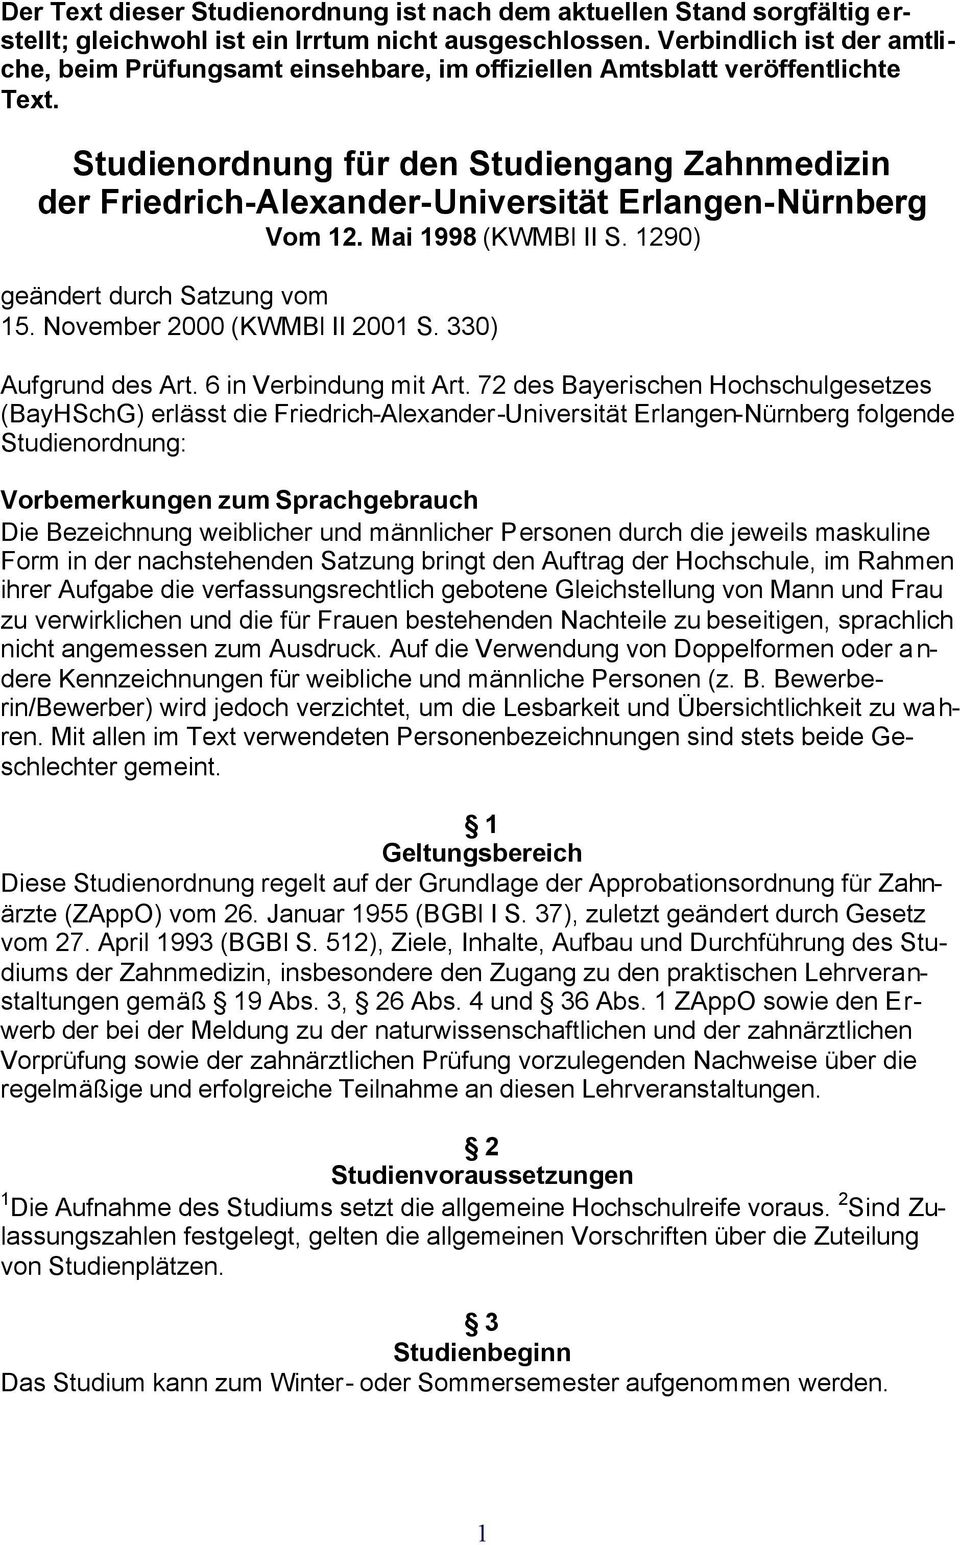 Studienordnung für den Studiengang Zahnmedizin der Friedrich-Alexander-Universität Erlangen-Nürnberg Vom 12. Mai 1998 (KWMBl S. 1290) geändert durch Satzung vom 15. November 2000 (KWMBl 2001 S.